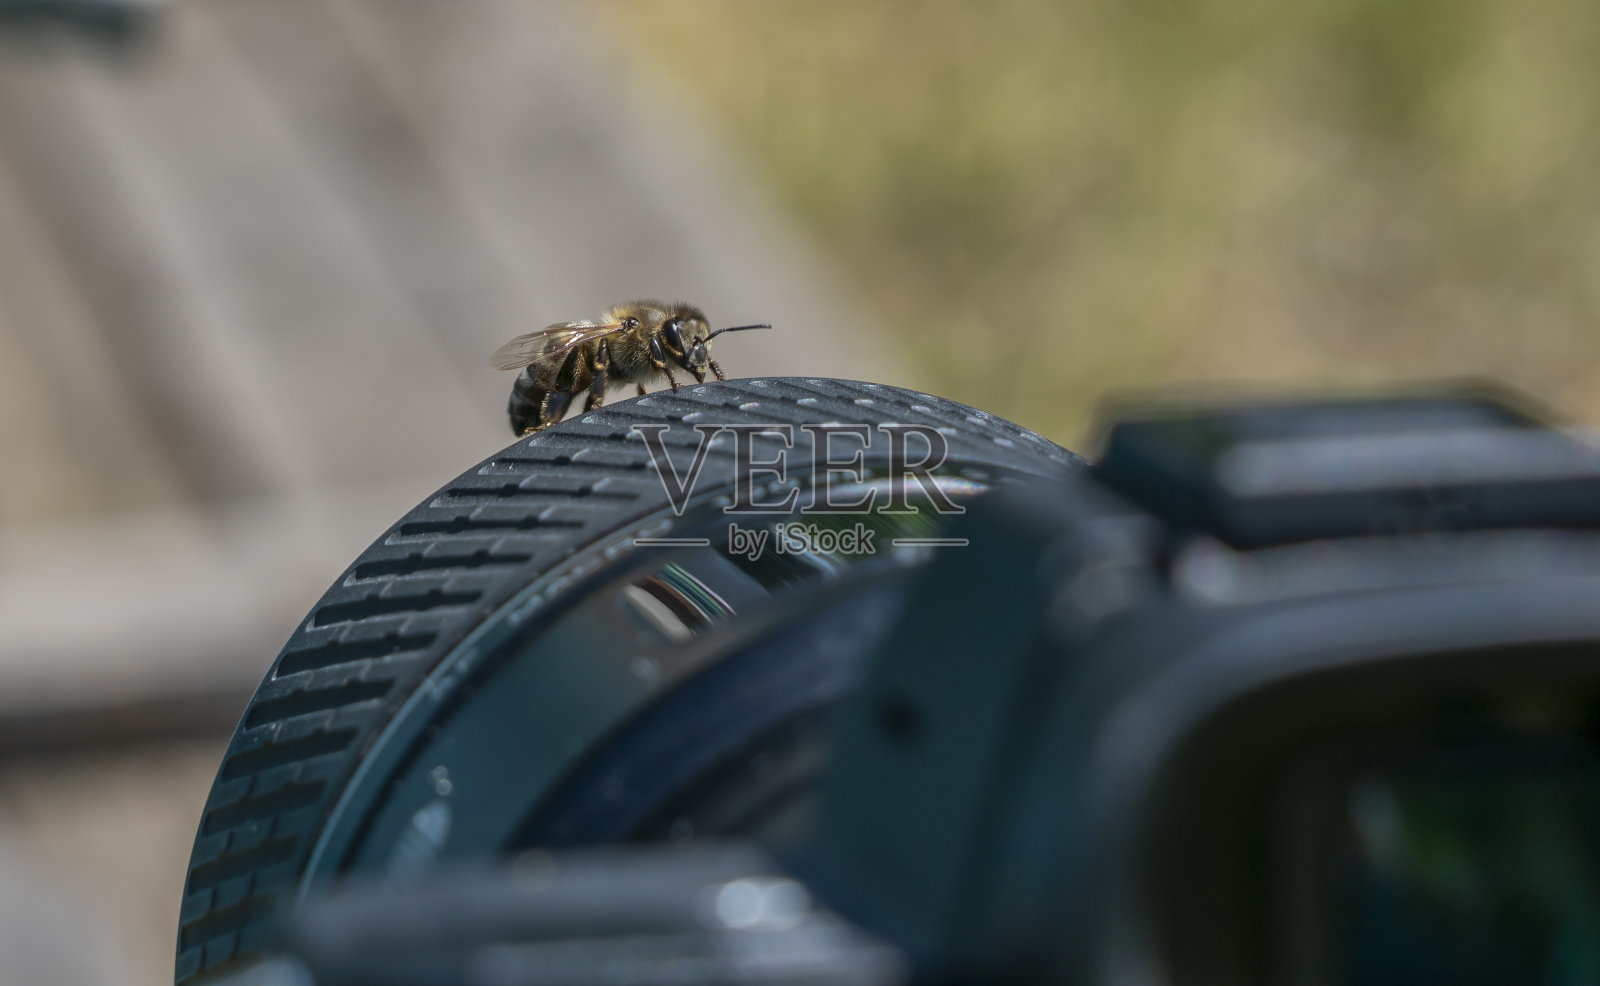 一只蜜蜂想要拍照，就坐在了照相机的镜头上照片摄影图片